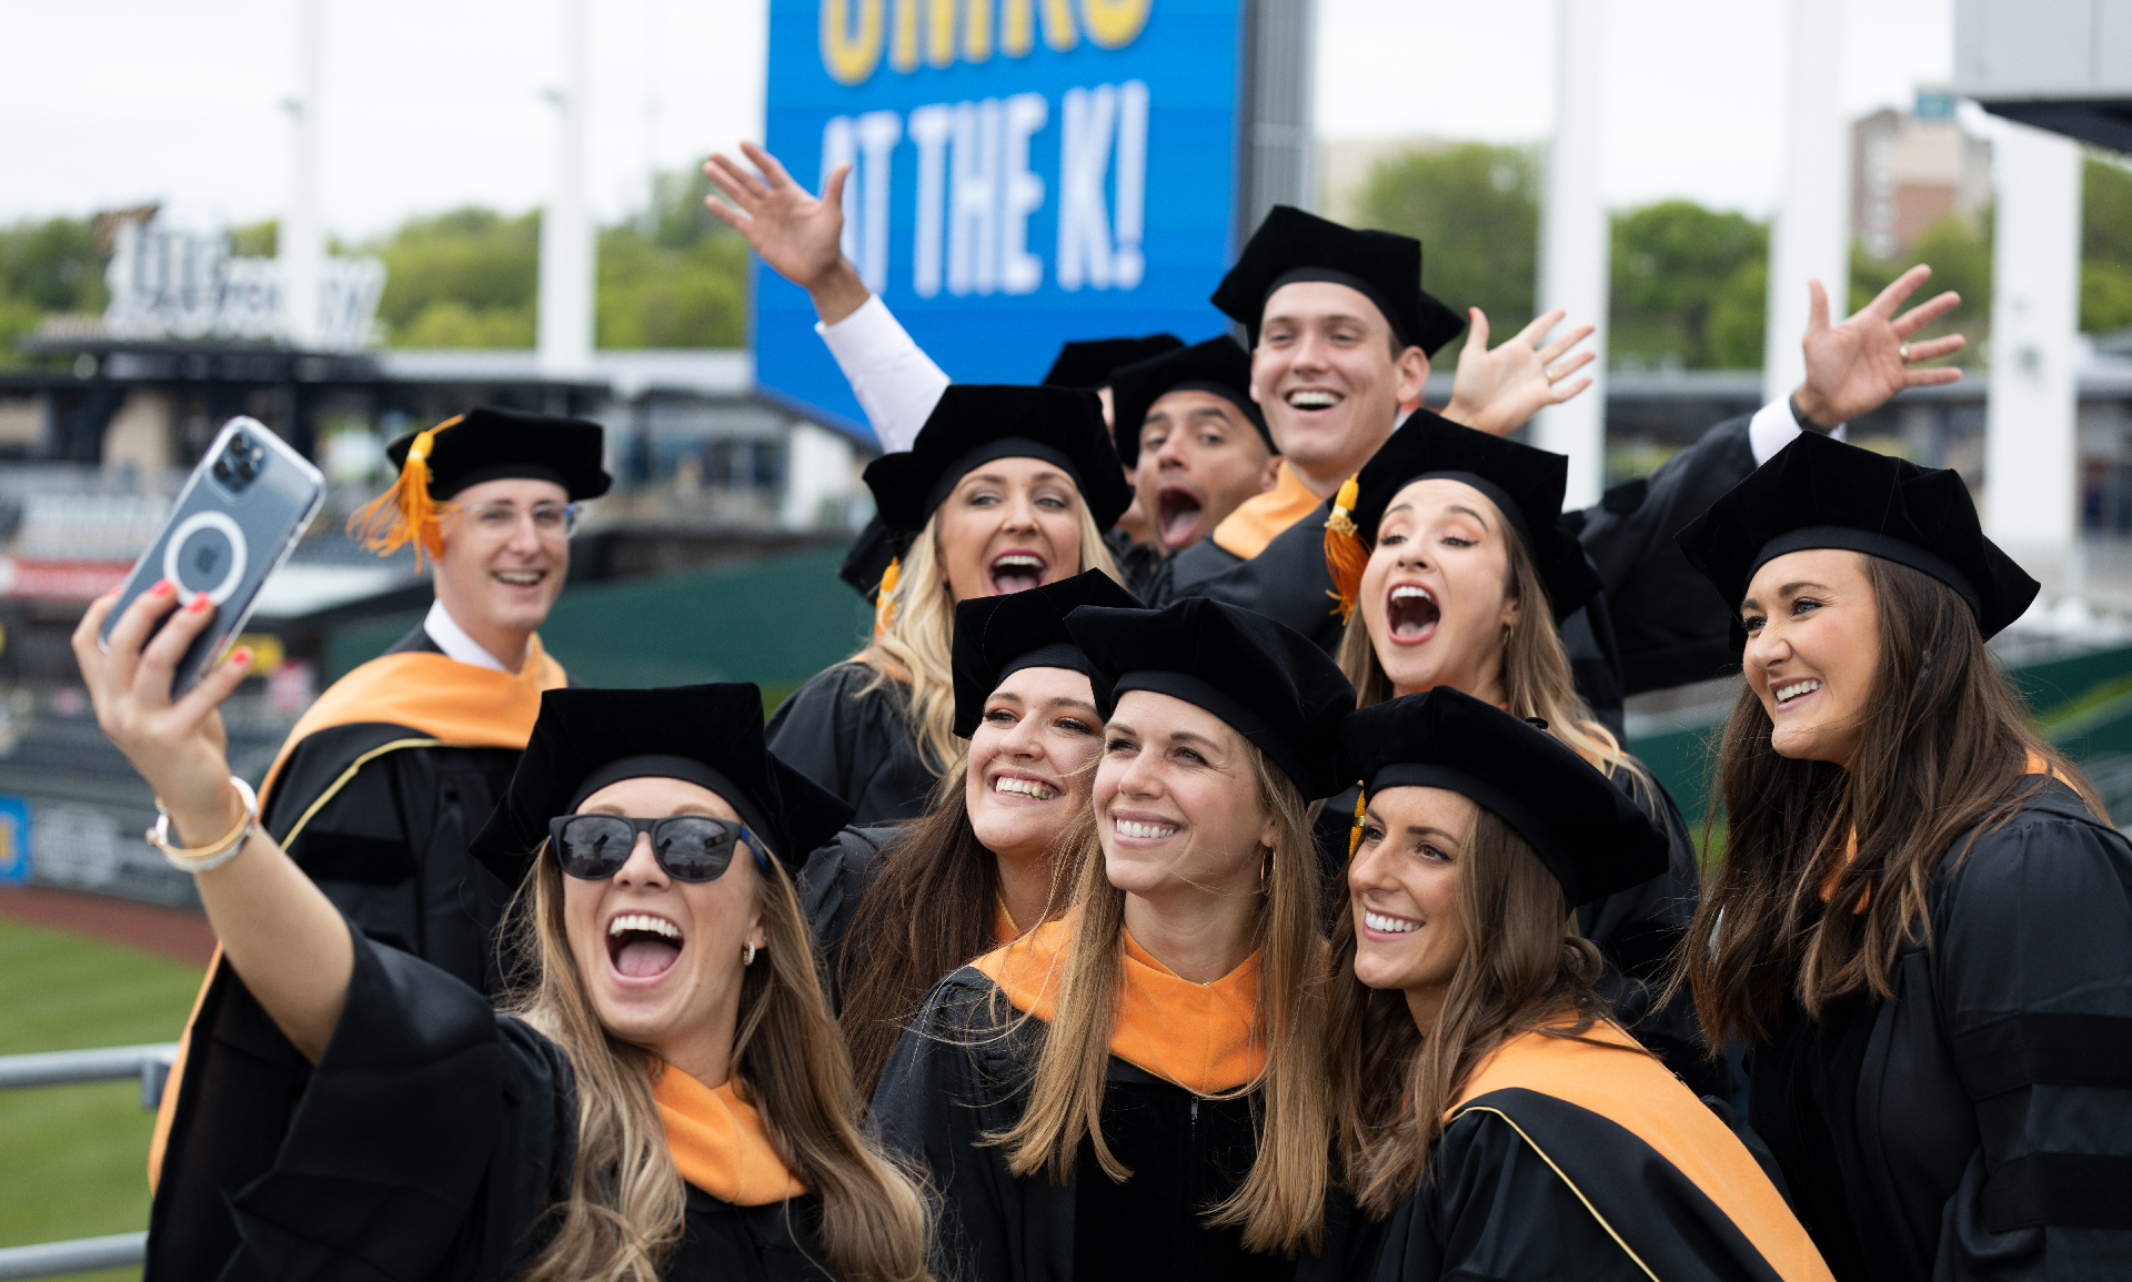 Graduates celebrate with a selfie